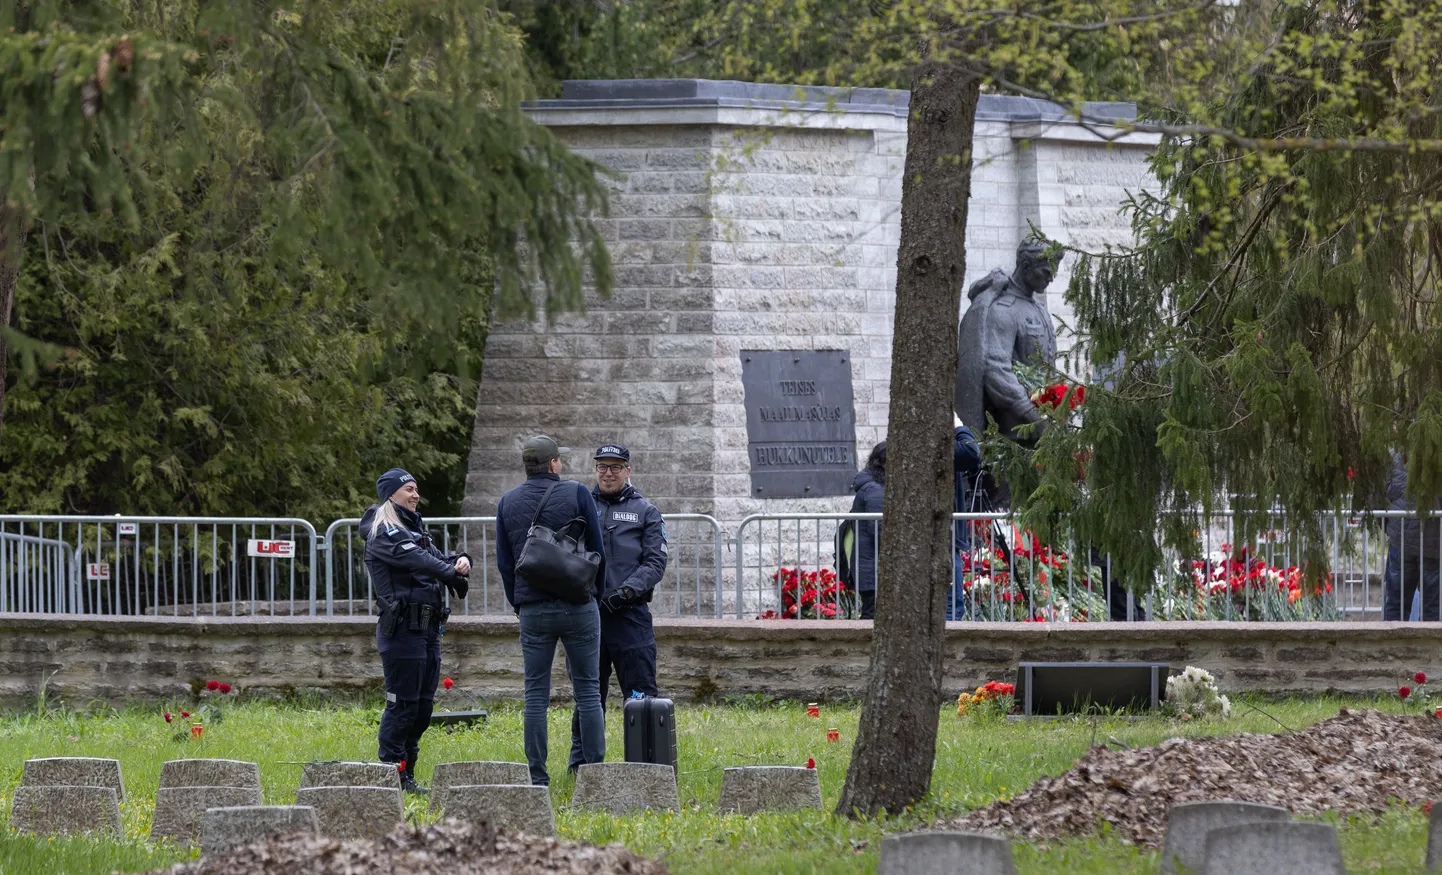 Politsei hinnangul kulges 9. mai tähistamine suhteliselt rahulikult. Tallinnas pronkssõduri juures valvas lilletoojaid turvafirma.